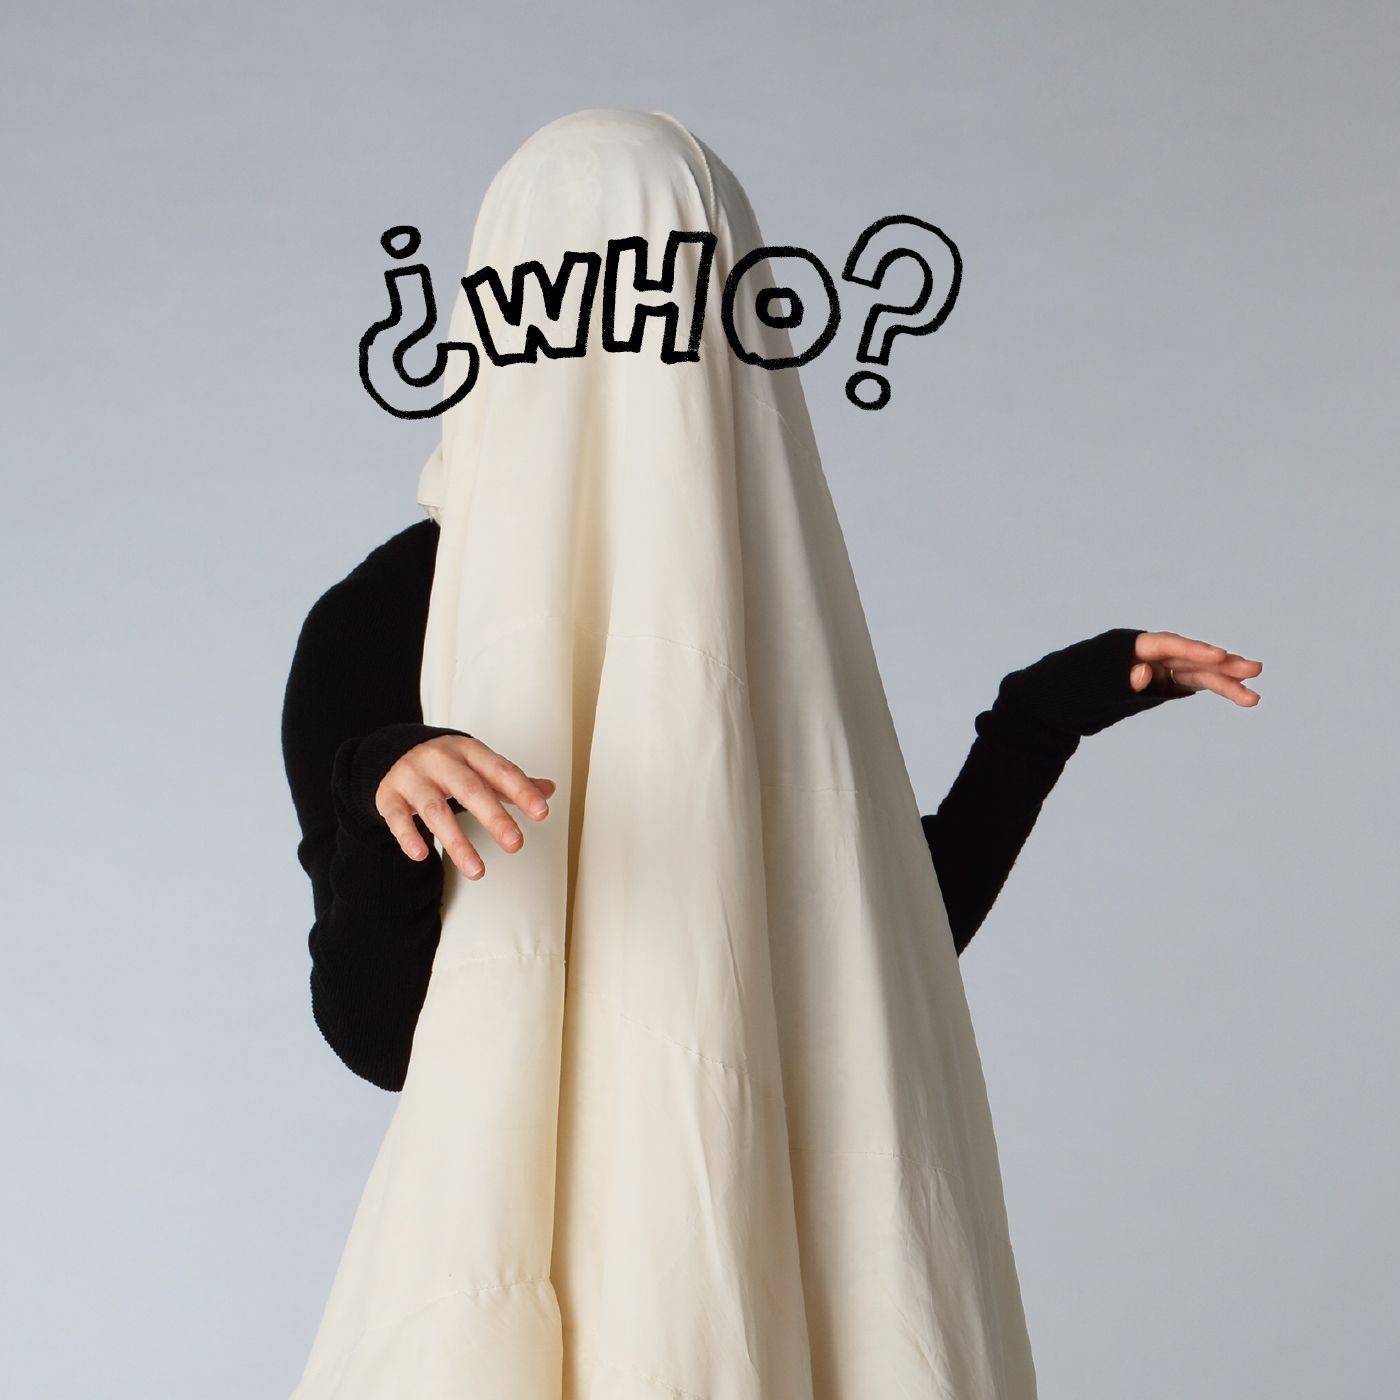 ¿WHO? (EP)